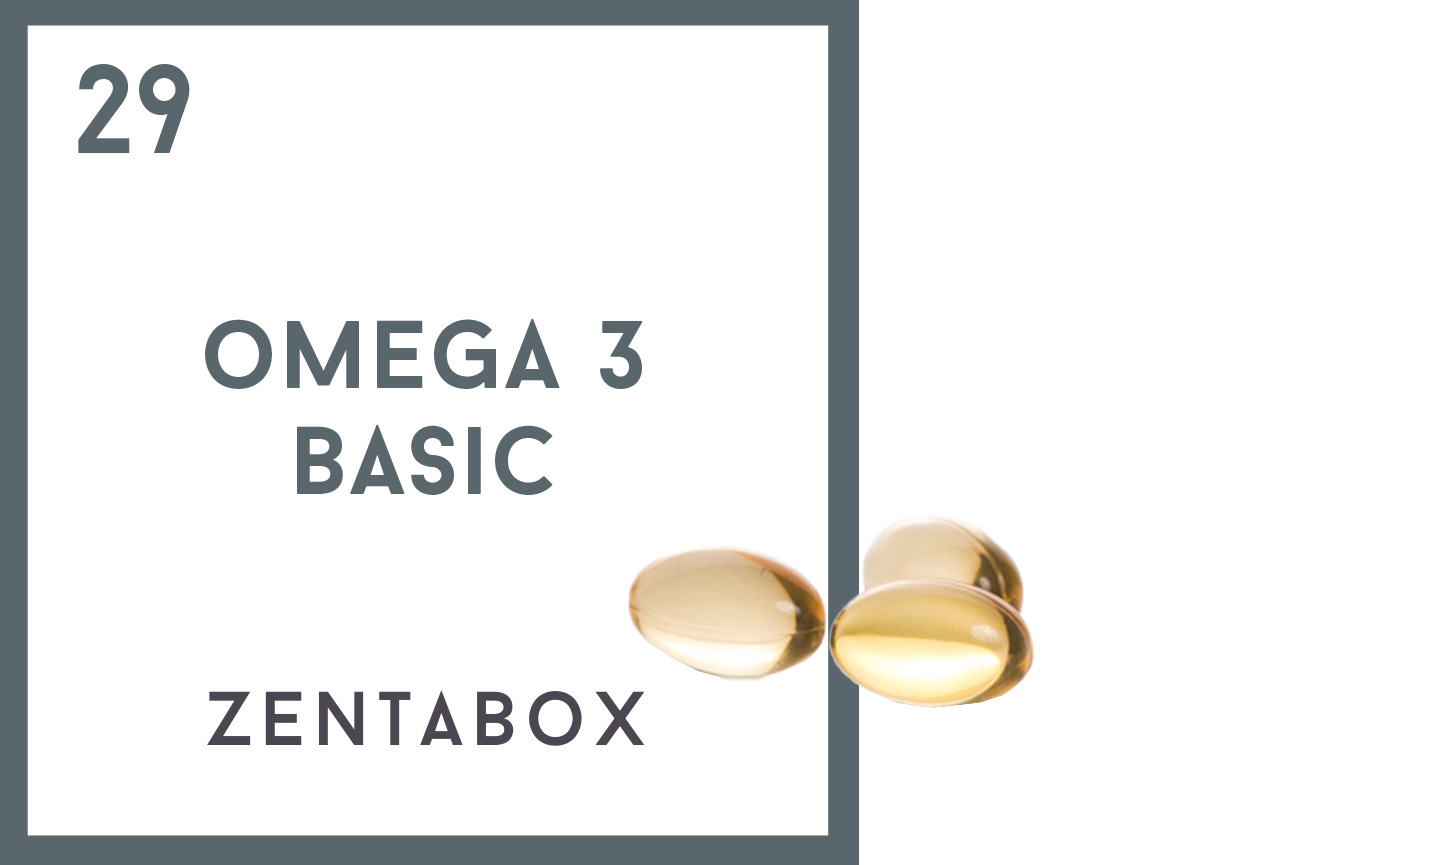 Omega 3 Basic